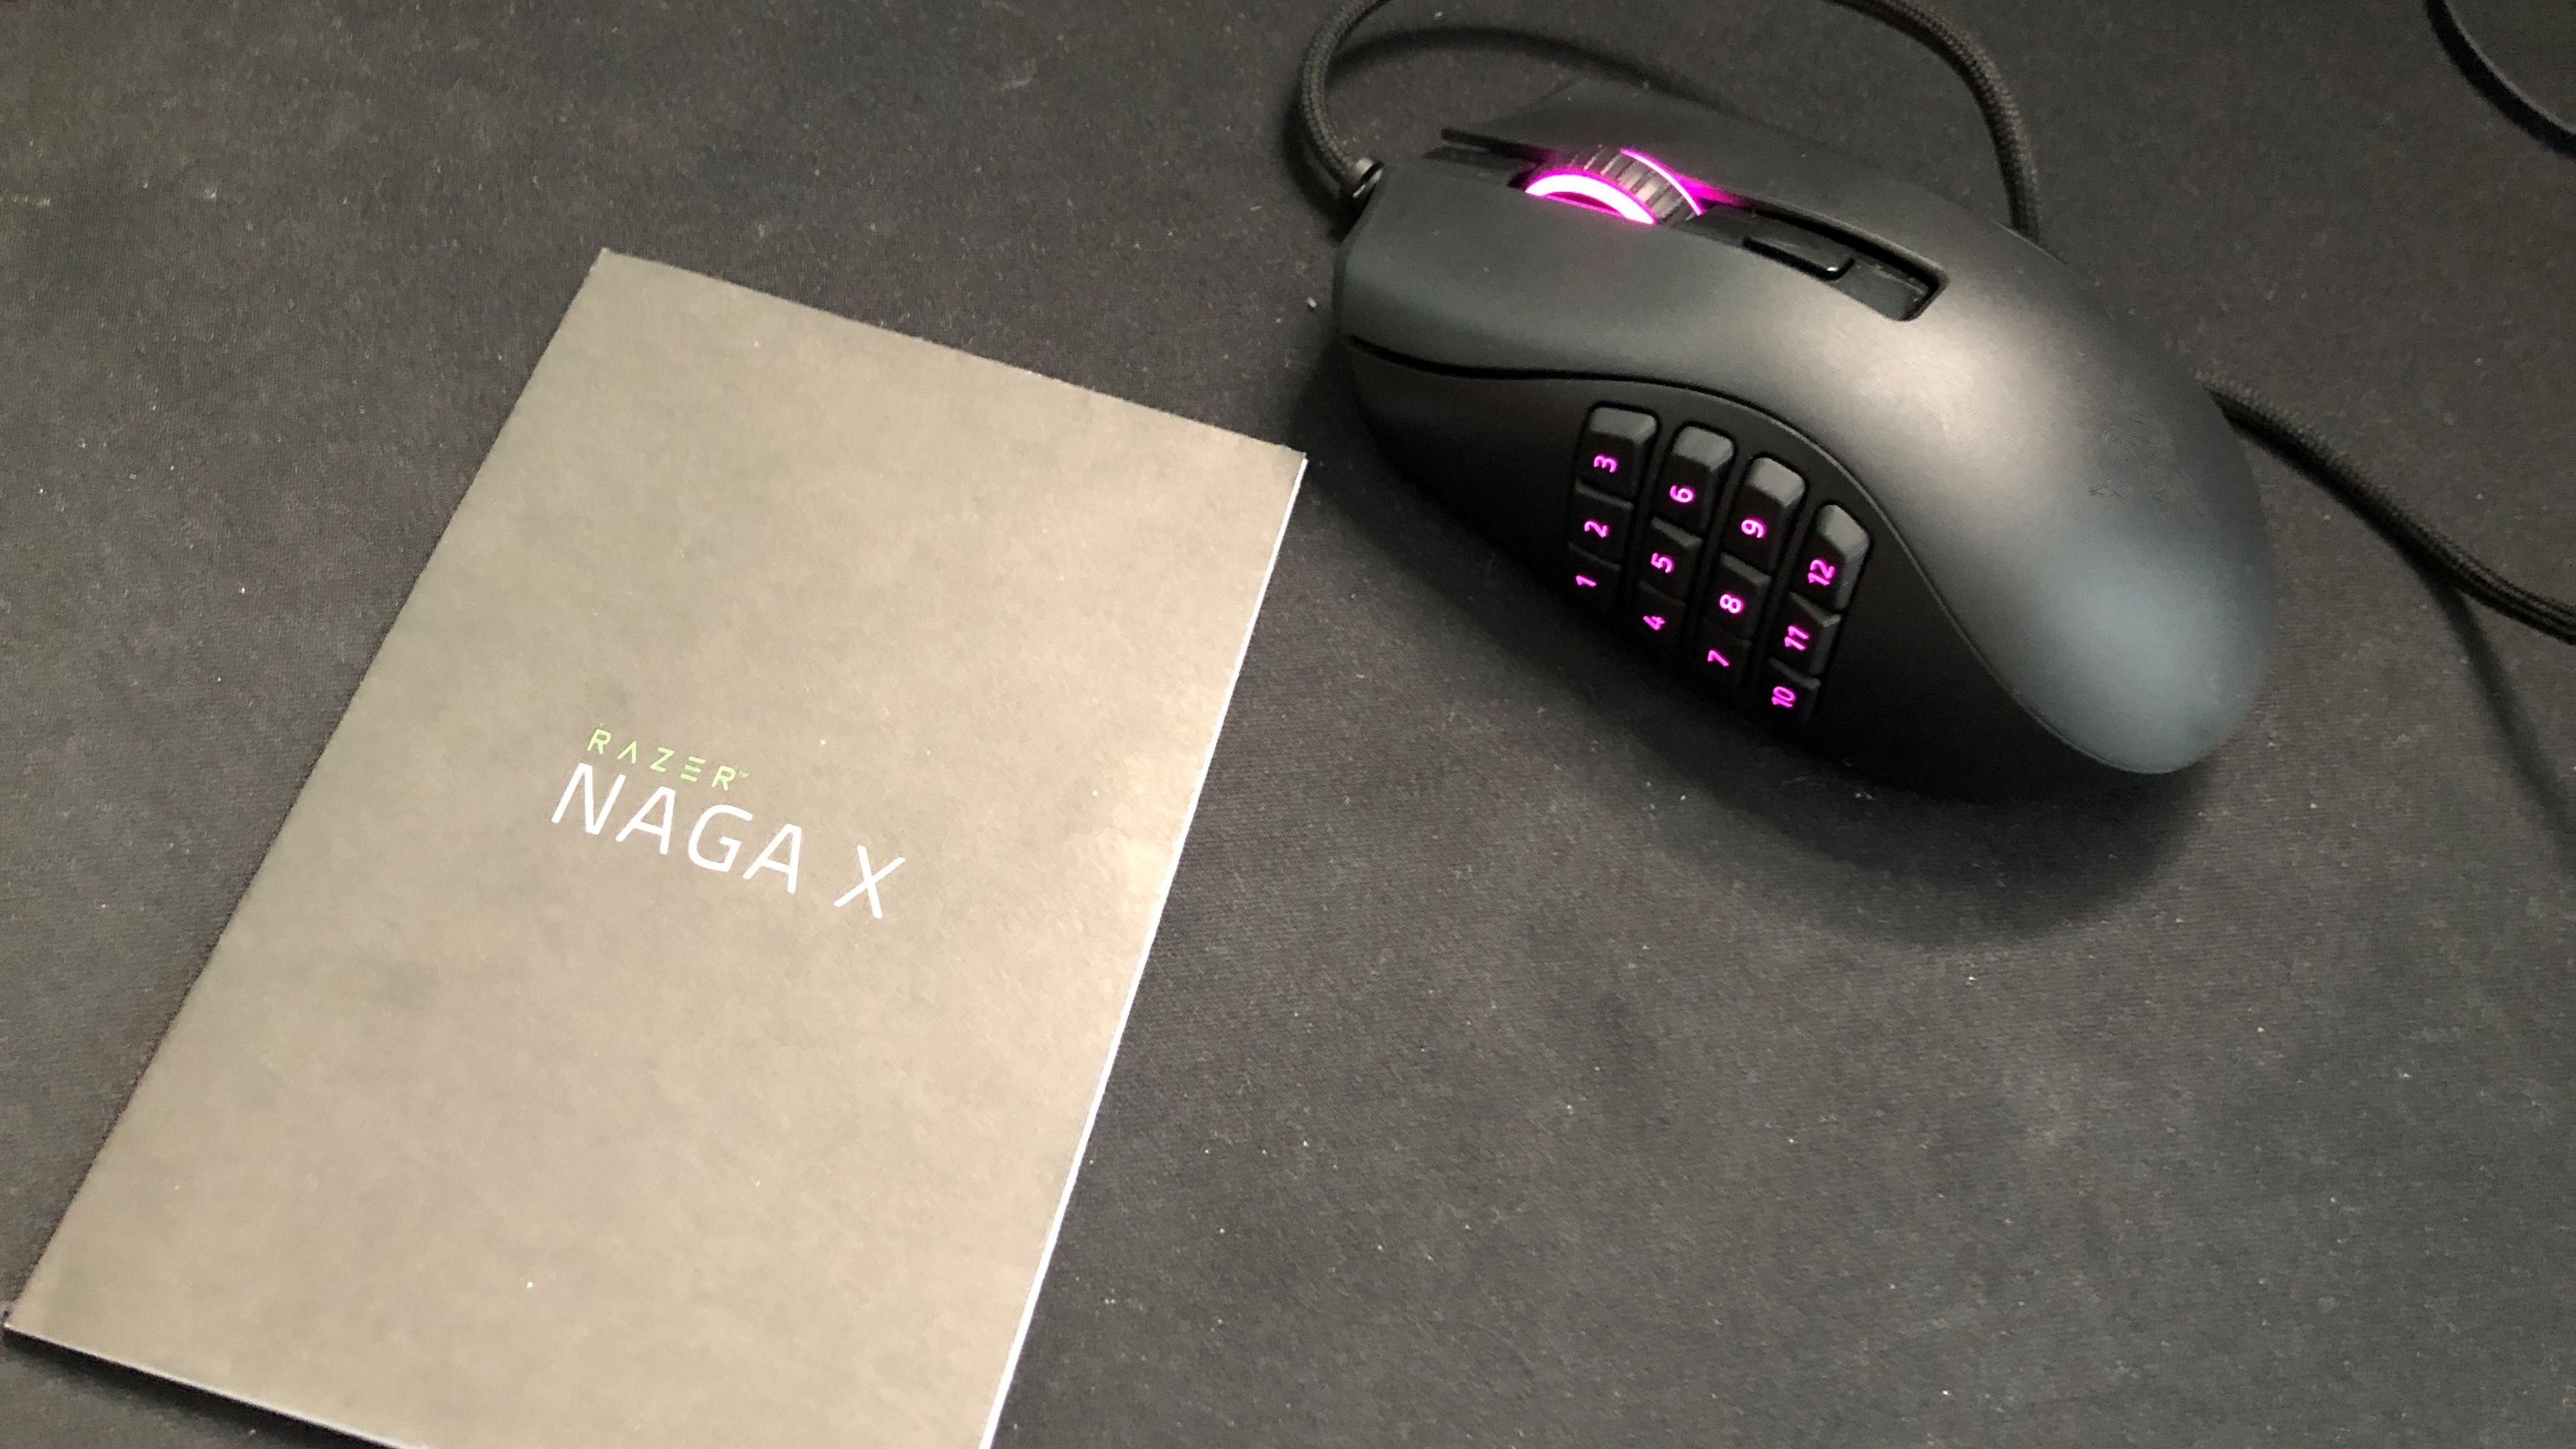 Razer Naga Pro Wireless Gaming Mouse Review